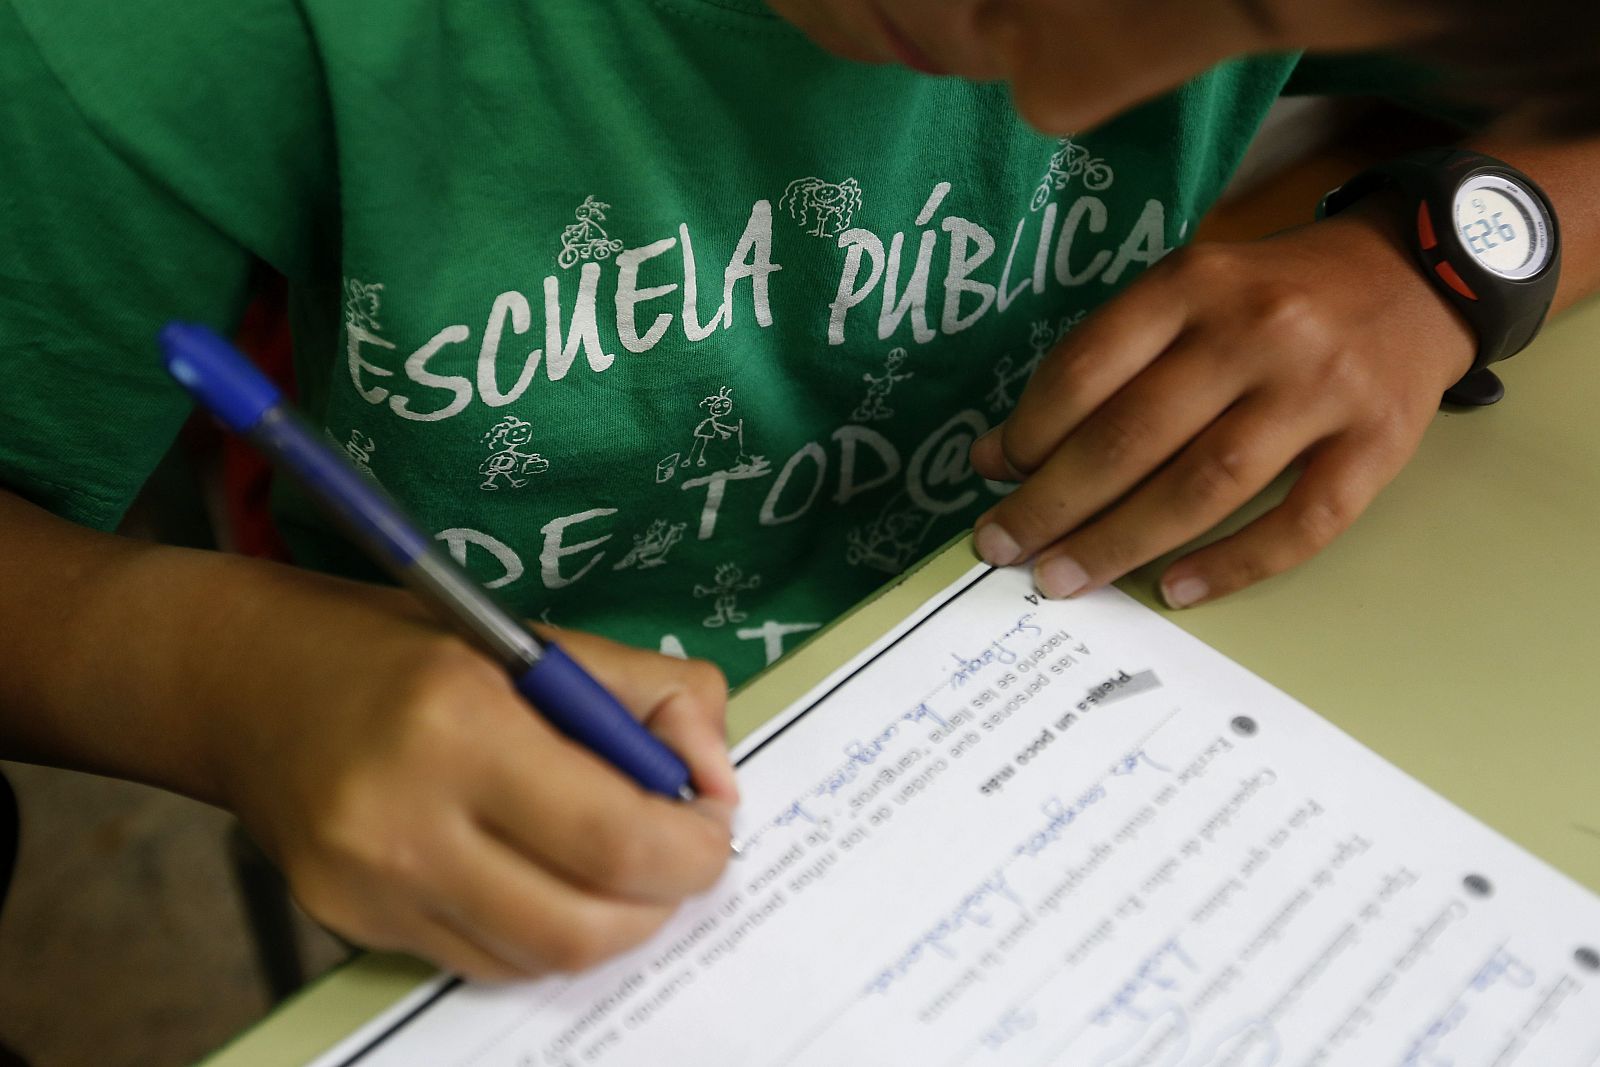 Un alumno del Colegio Joaquín Costa de Madrid rellena una ficha con la camiseta a favor de la escuela pública